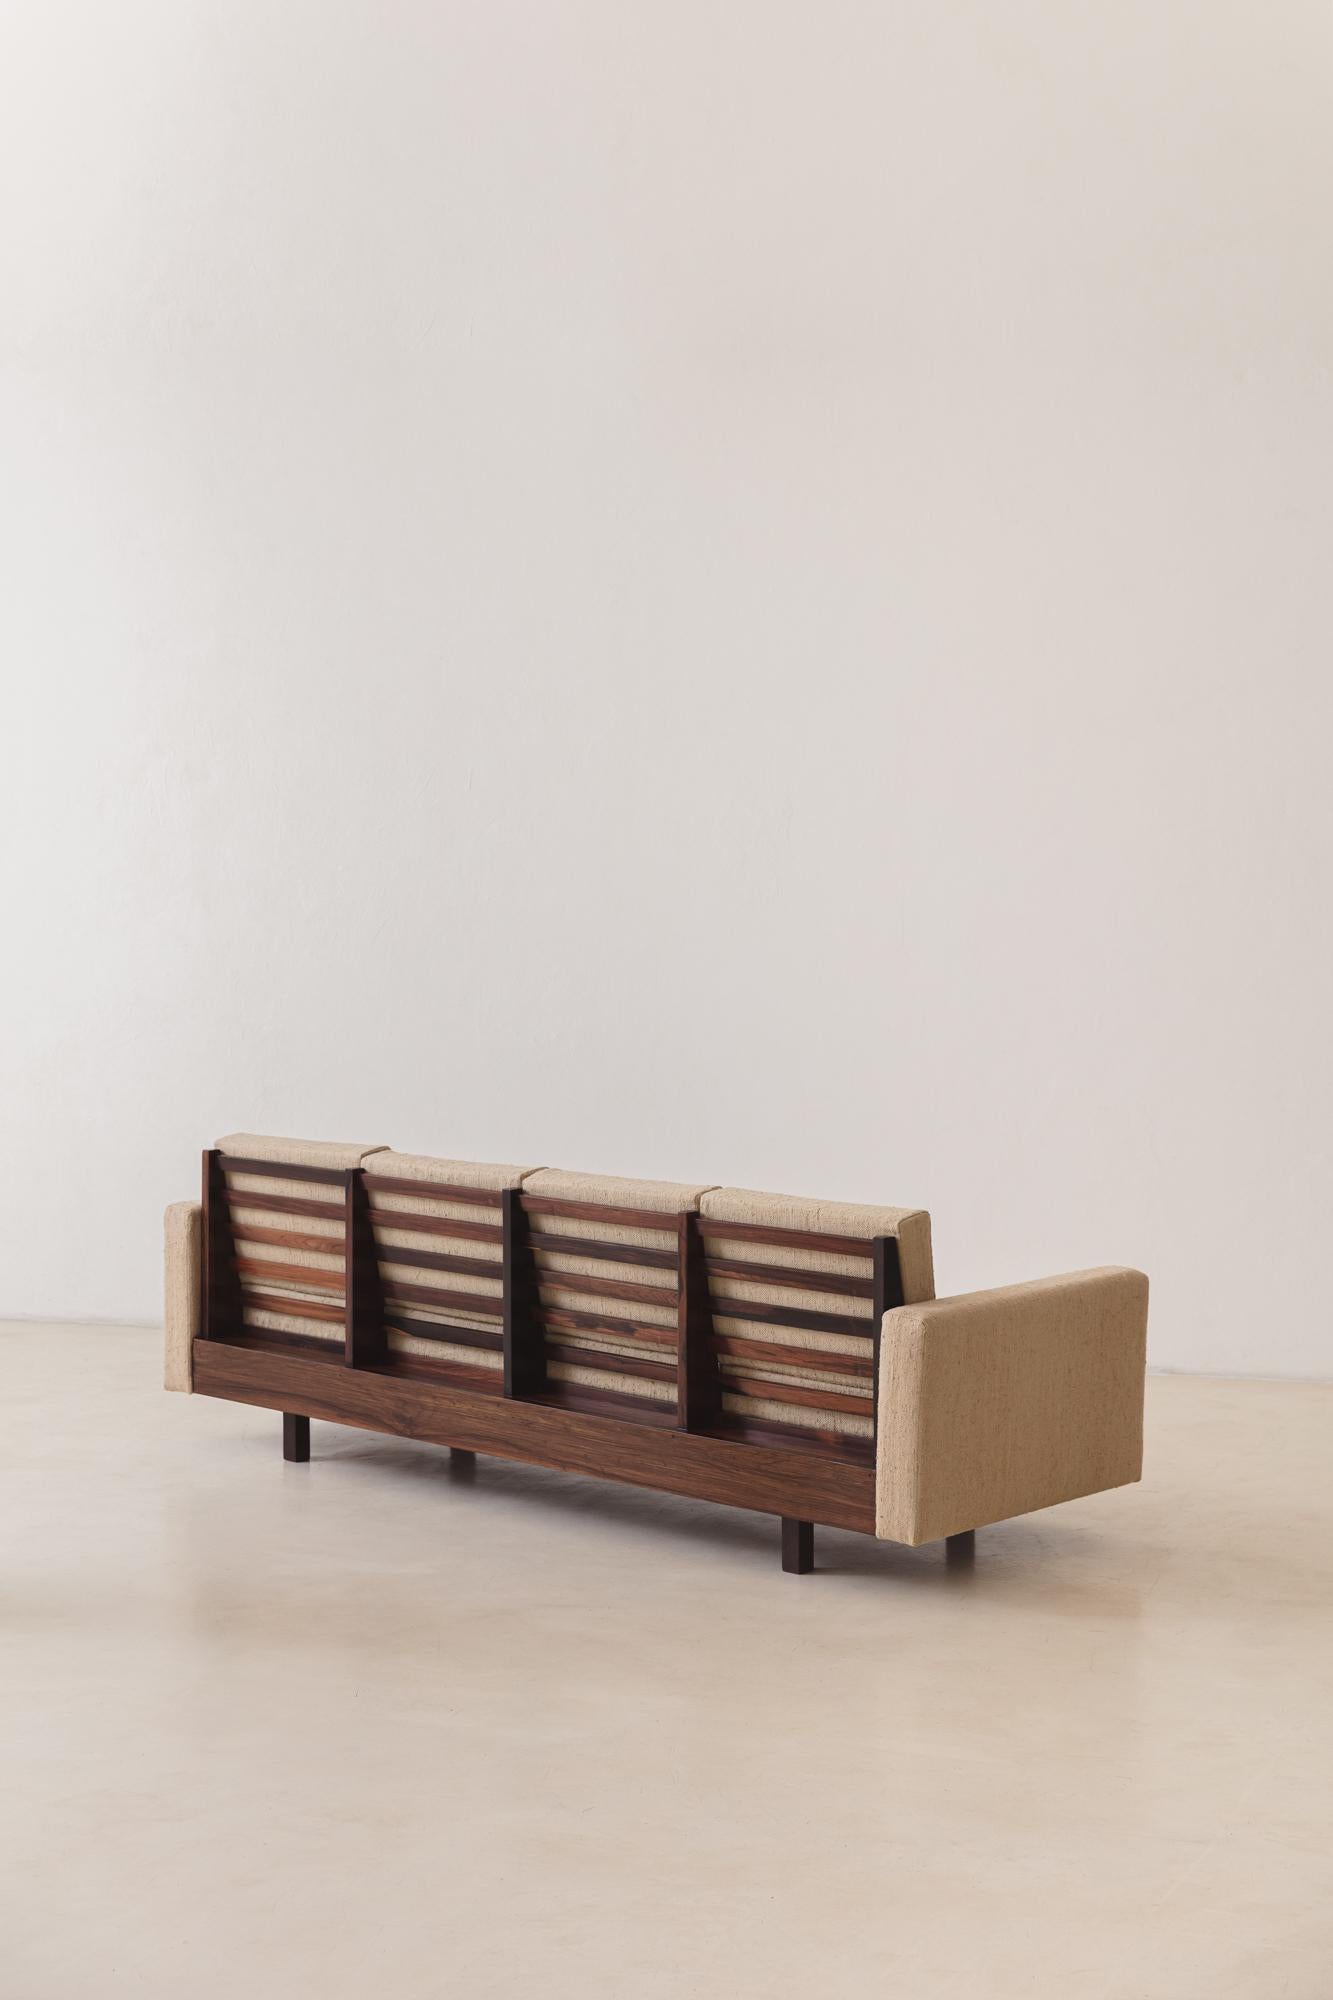 Brazilian Rosewood Sofa by Celina Decorações, Midcentury Brazilian Design, 1960s For Sale 7